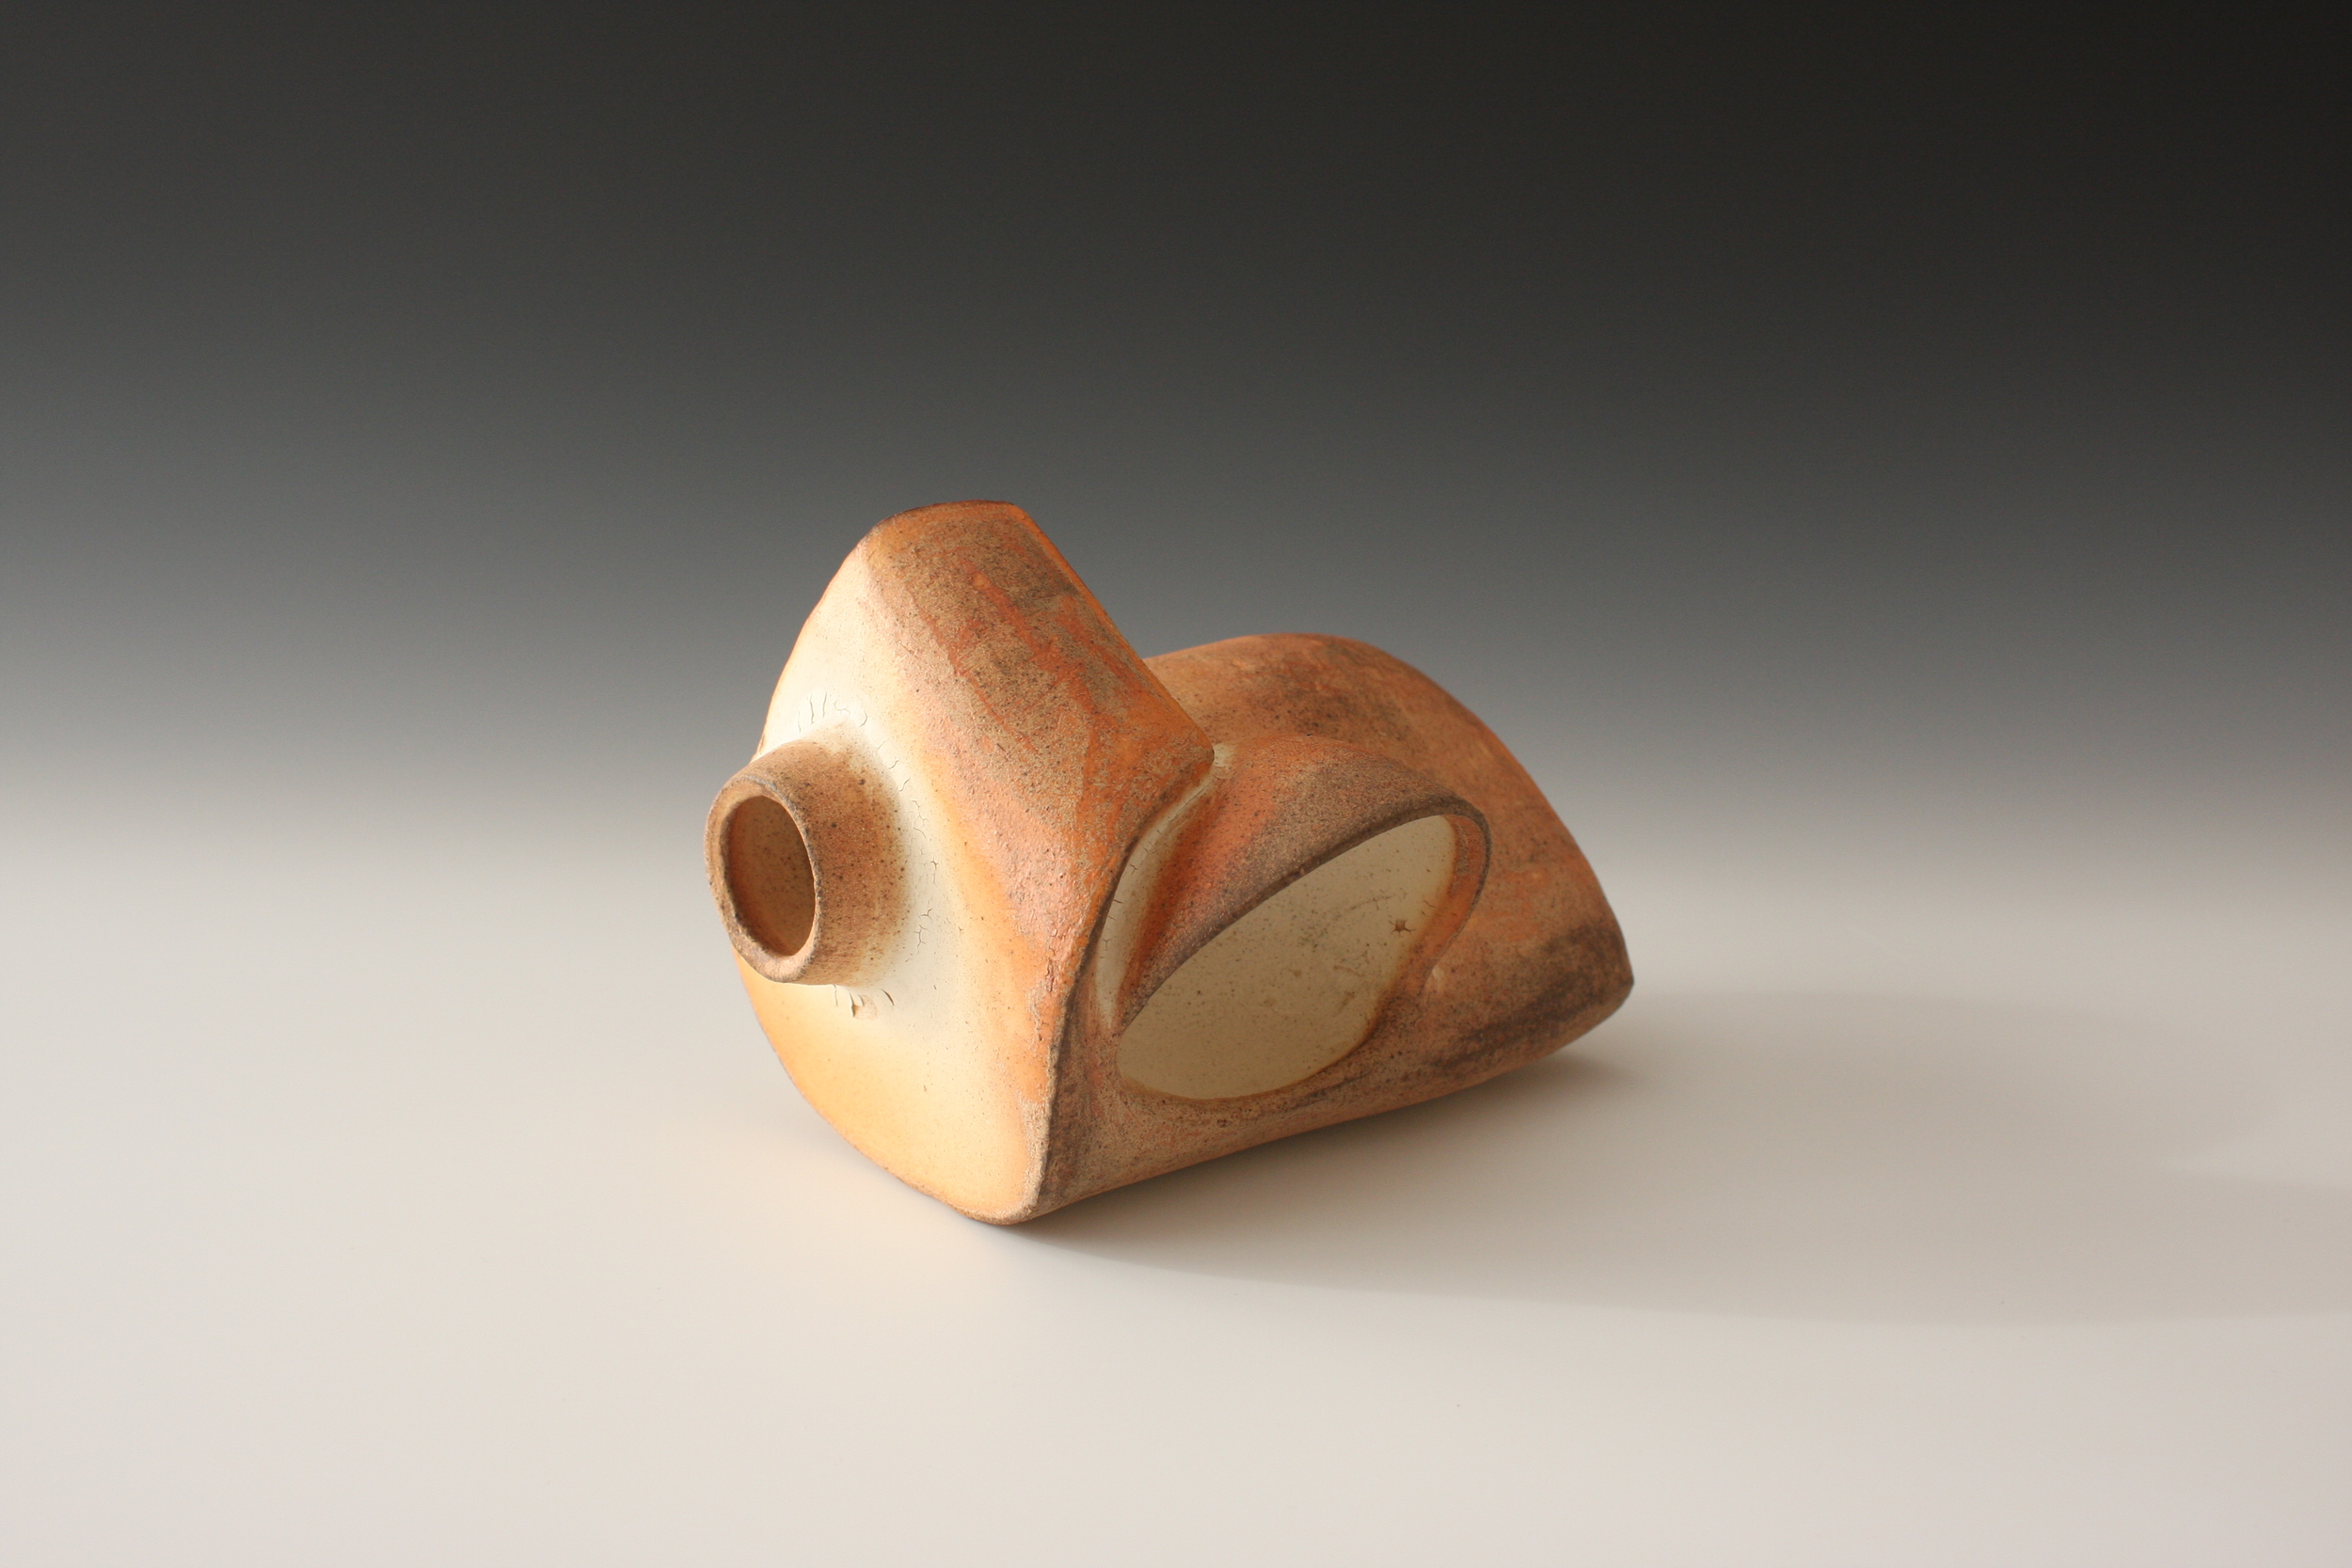   Dwelling  stoneware clay 7" x 5" x 6"  2014 